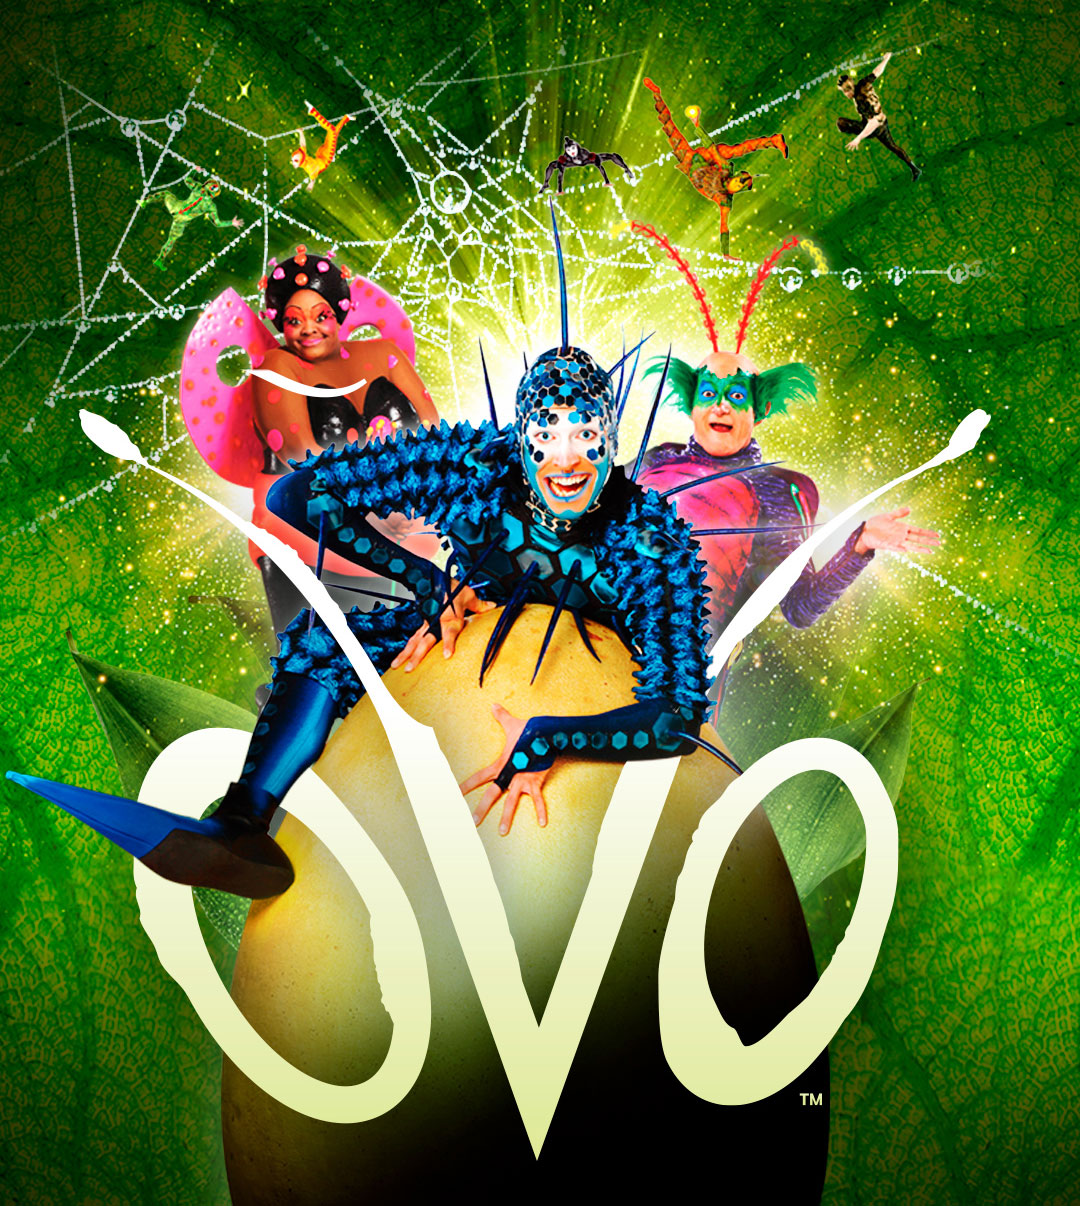 Cirque du Soleil OVO Viejas Arena Official Website Associated